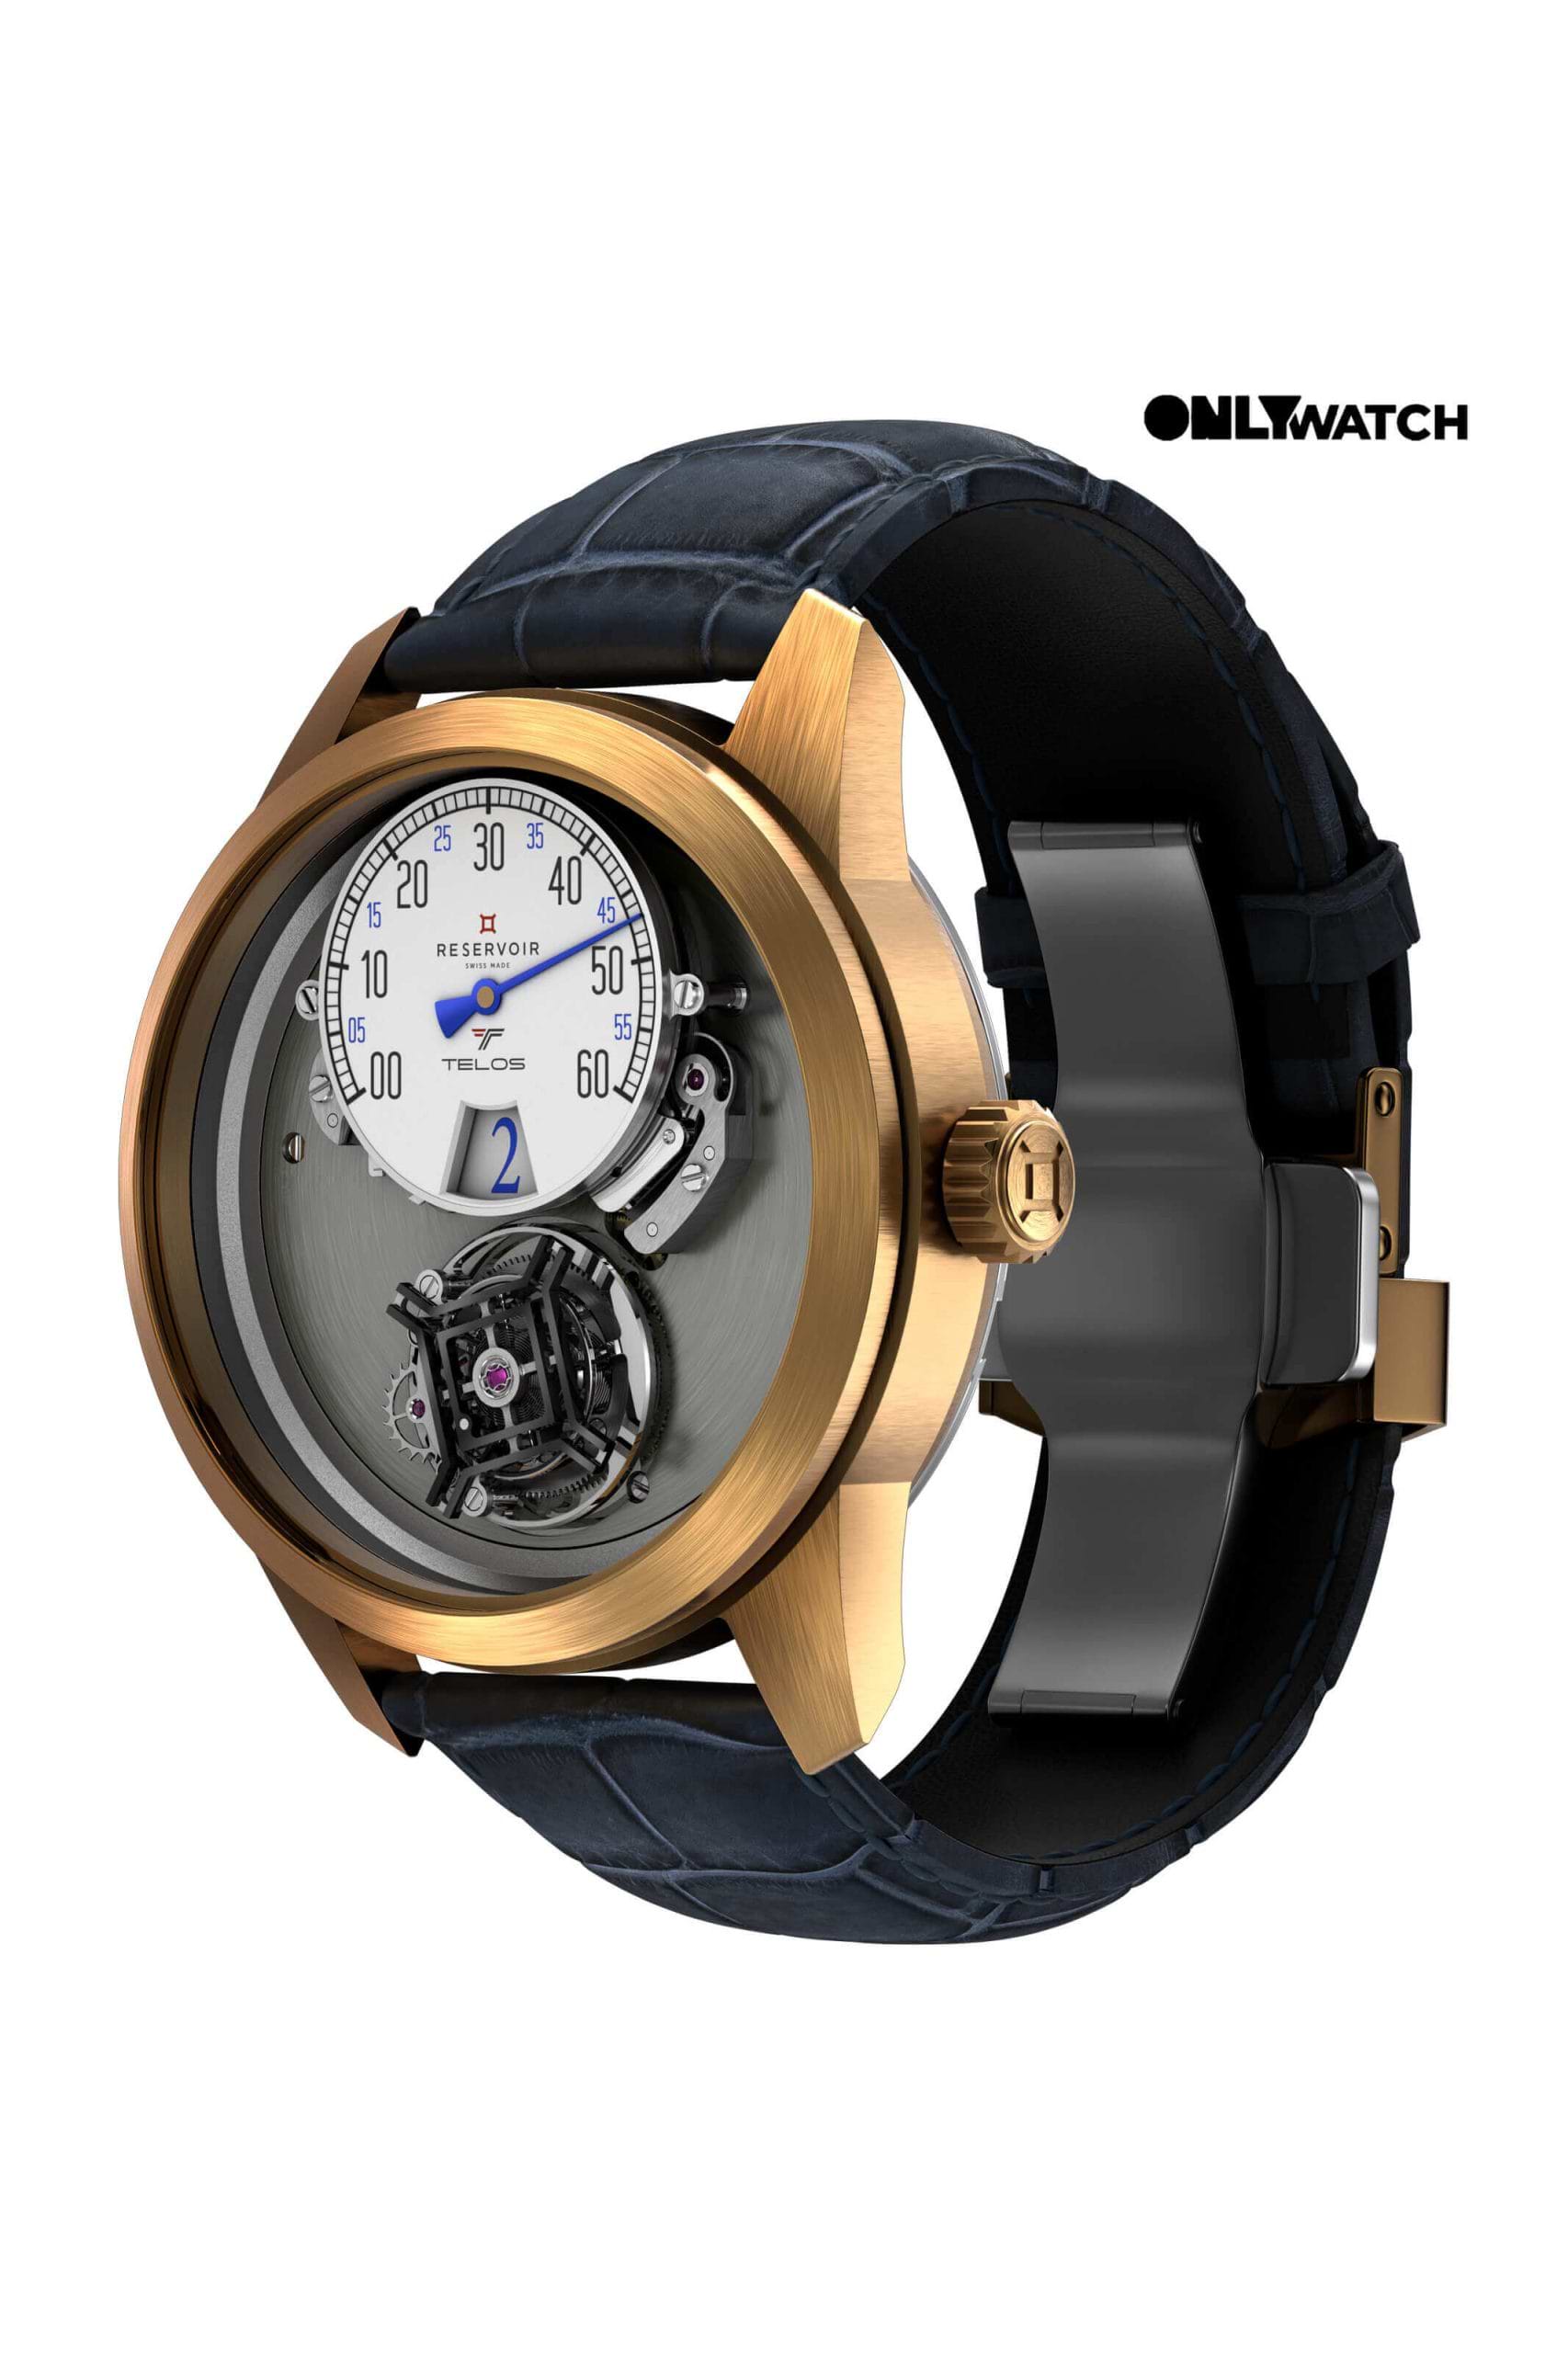 Luxury Swissmade Tourbillon Tiefenmesser Watch in Dark Brown, Light Beige, and Light Grey